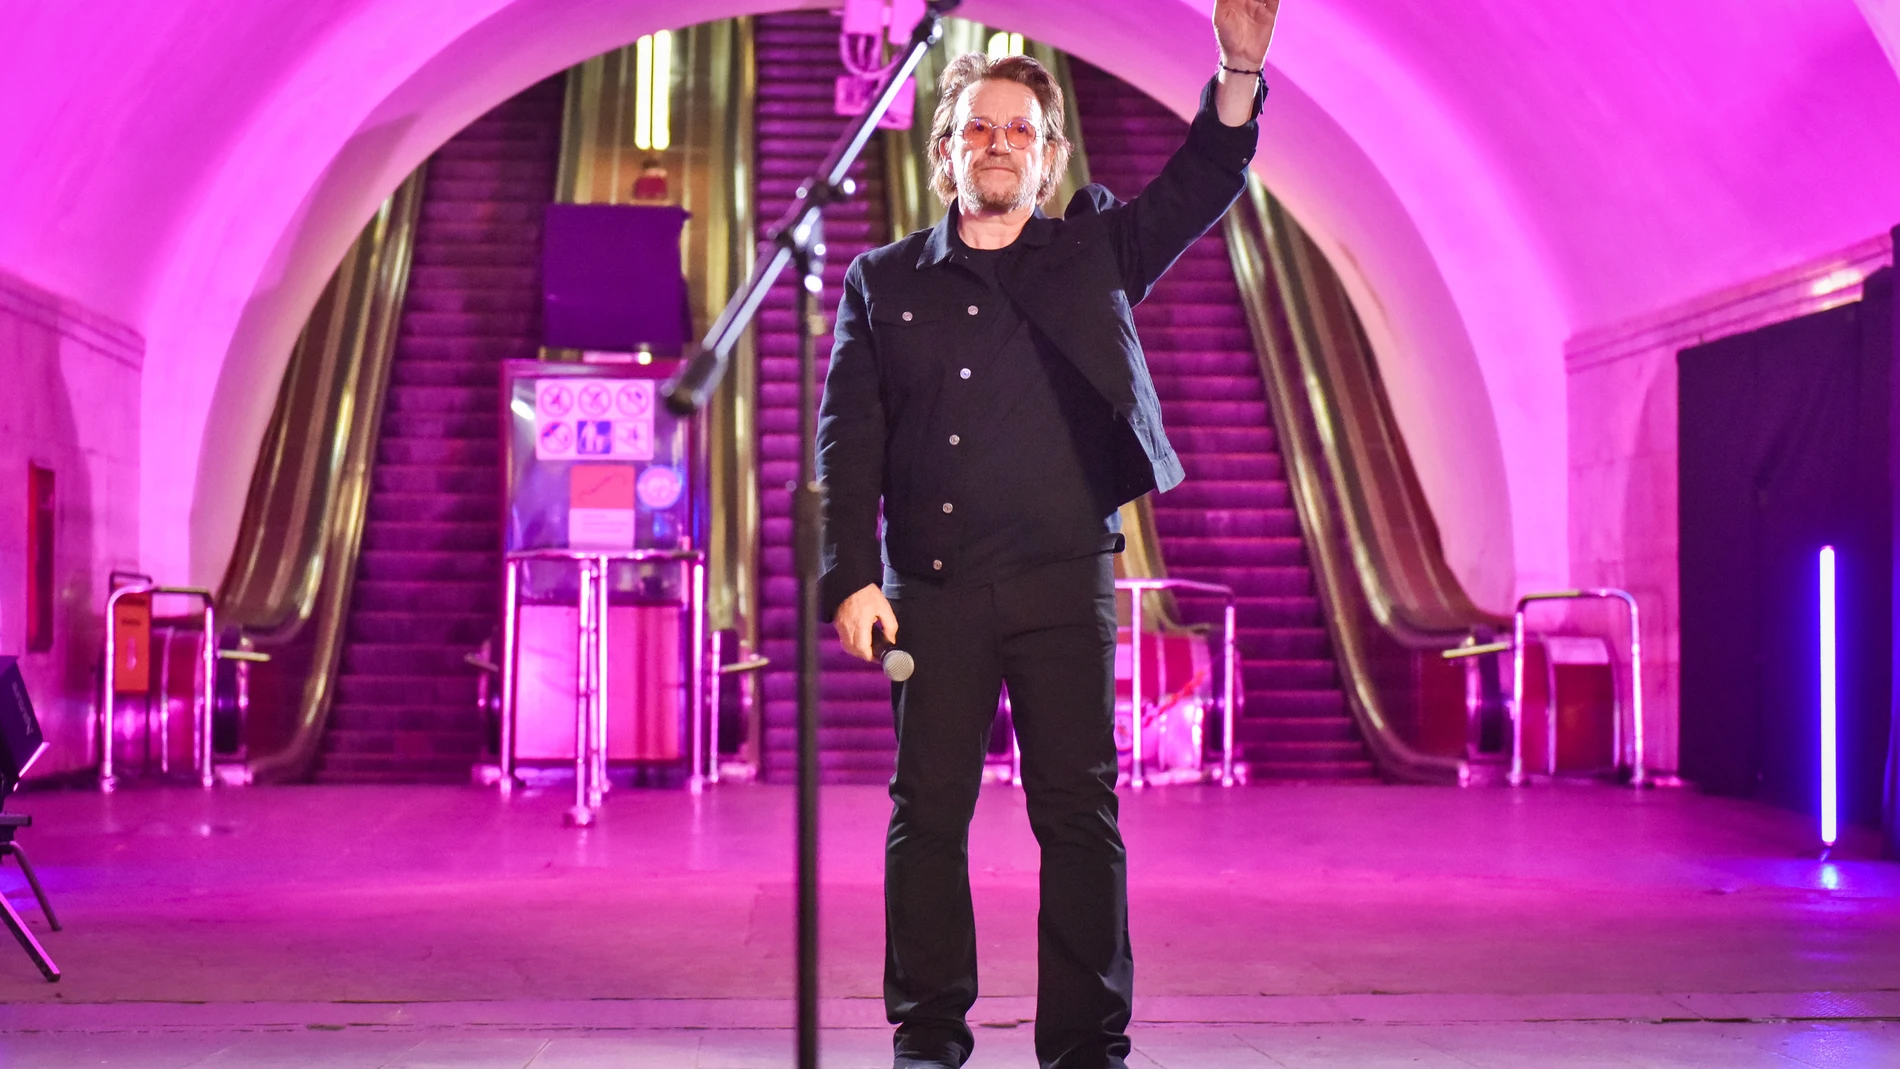 El músico irlandés Bono, de la banda U2, actúa en la estación de metro de Khreshatyk en Kyiv (Ucrania), el 8 de mayo de 2022